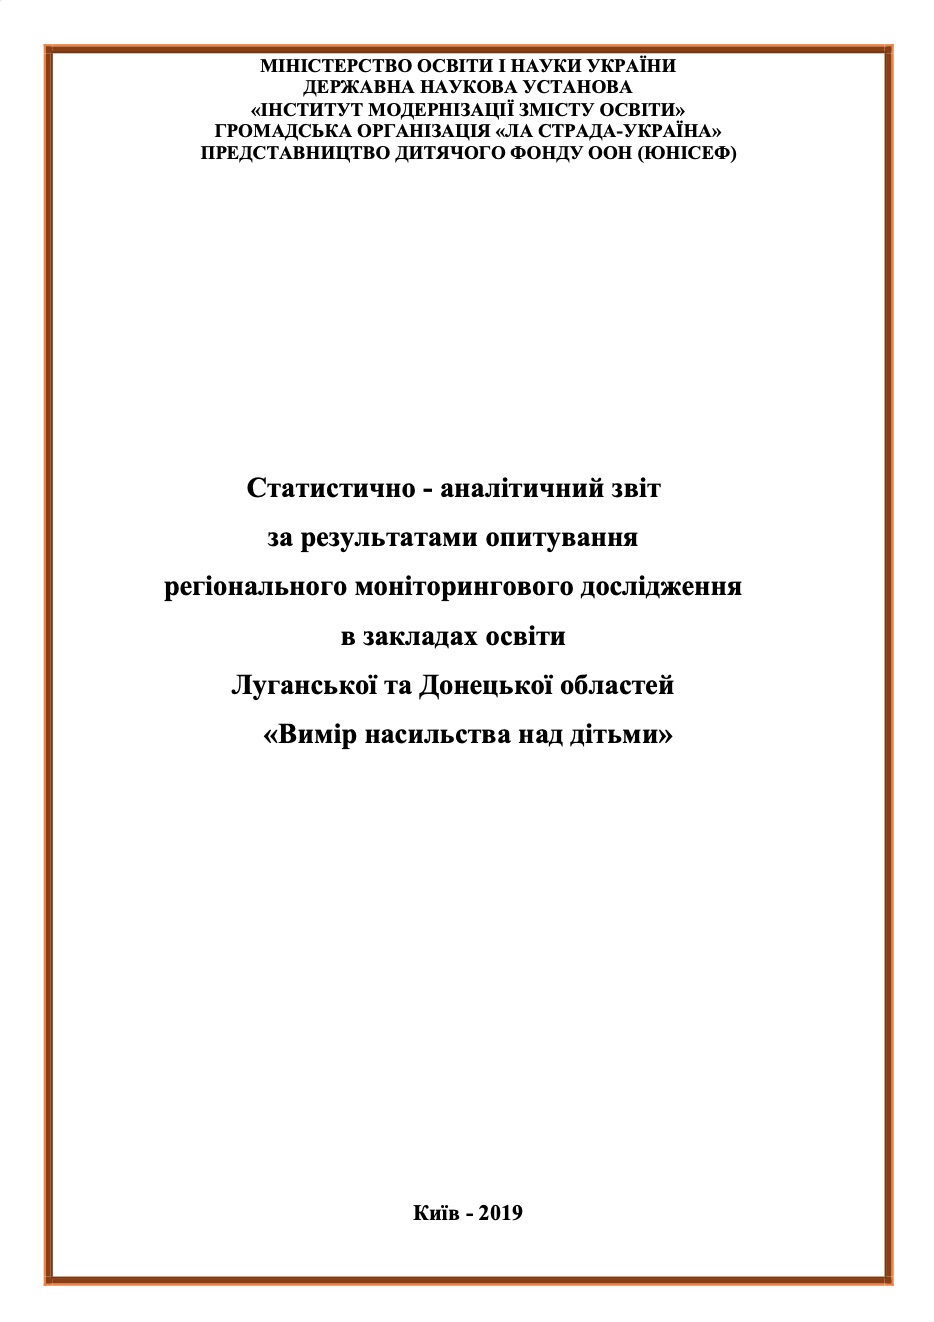 Опитування регіонального моніторингового дослідження в закладах освіти Луганської та Донецької областей «Вимір насильства над дітьми», 2019